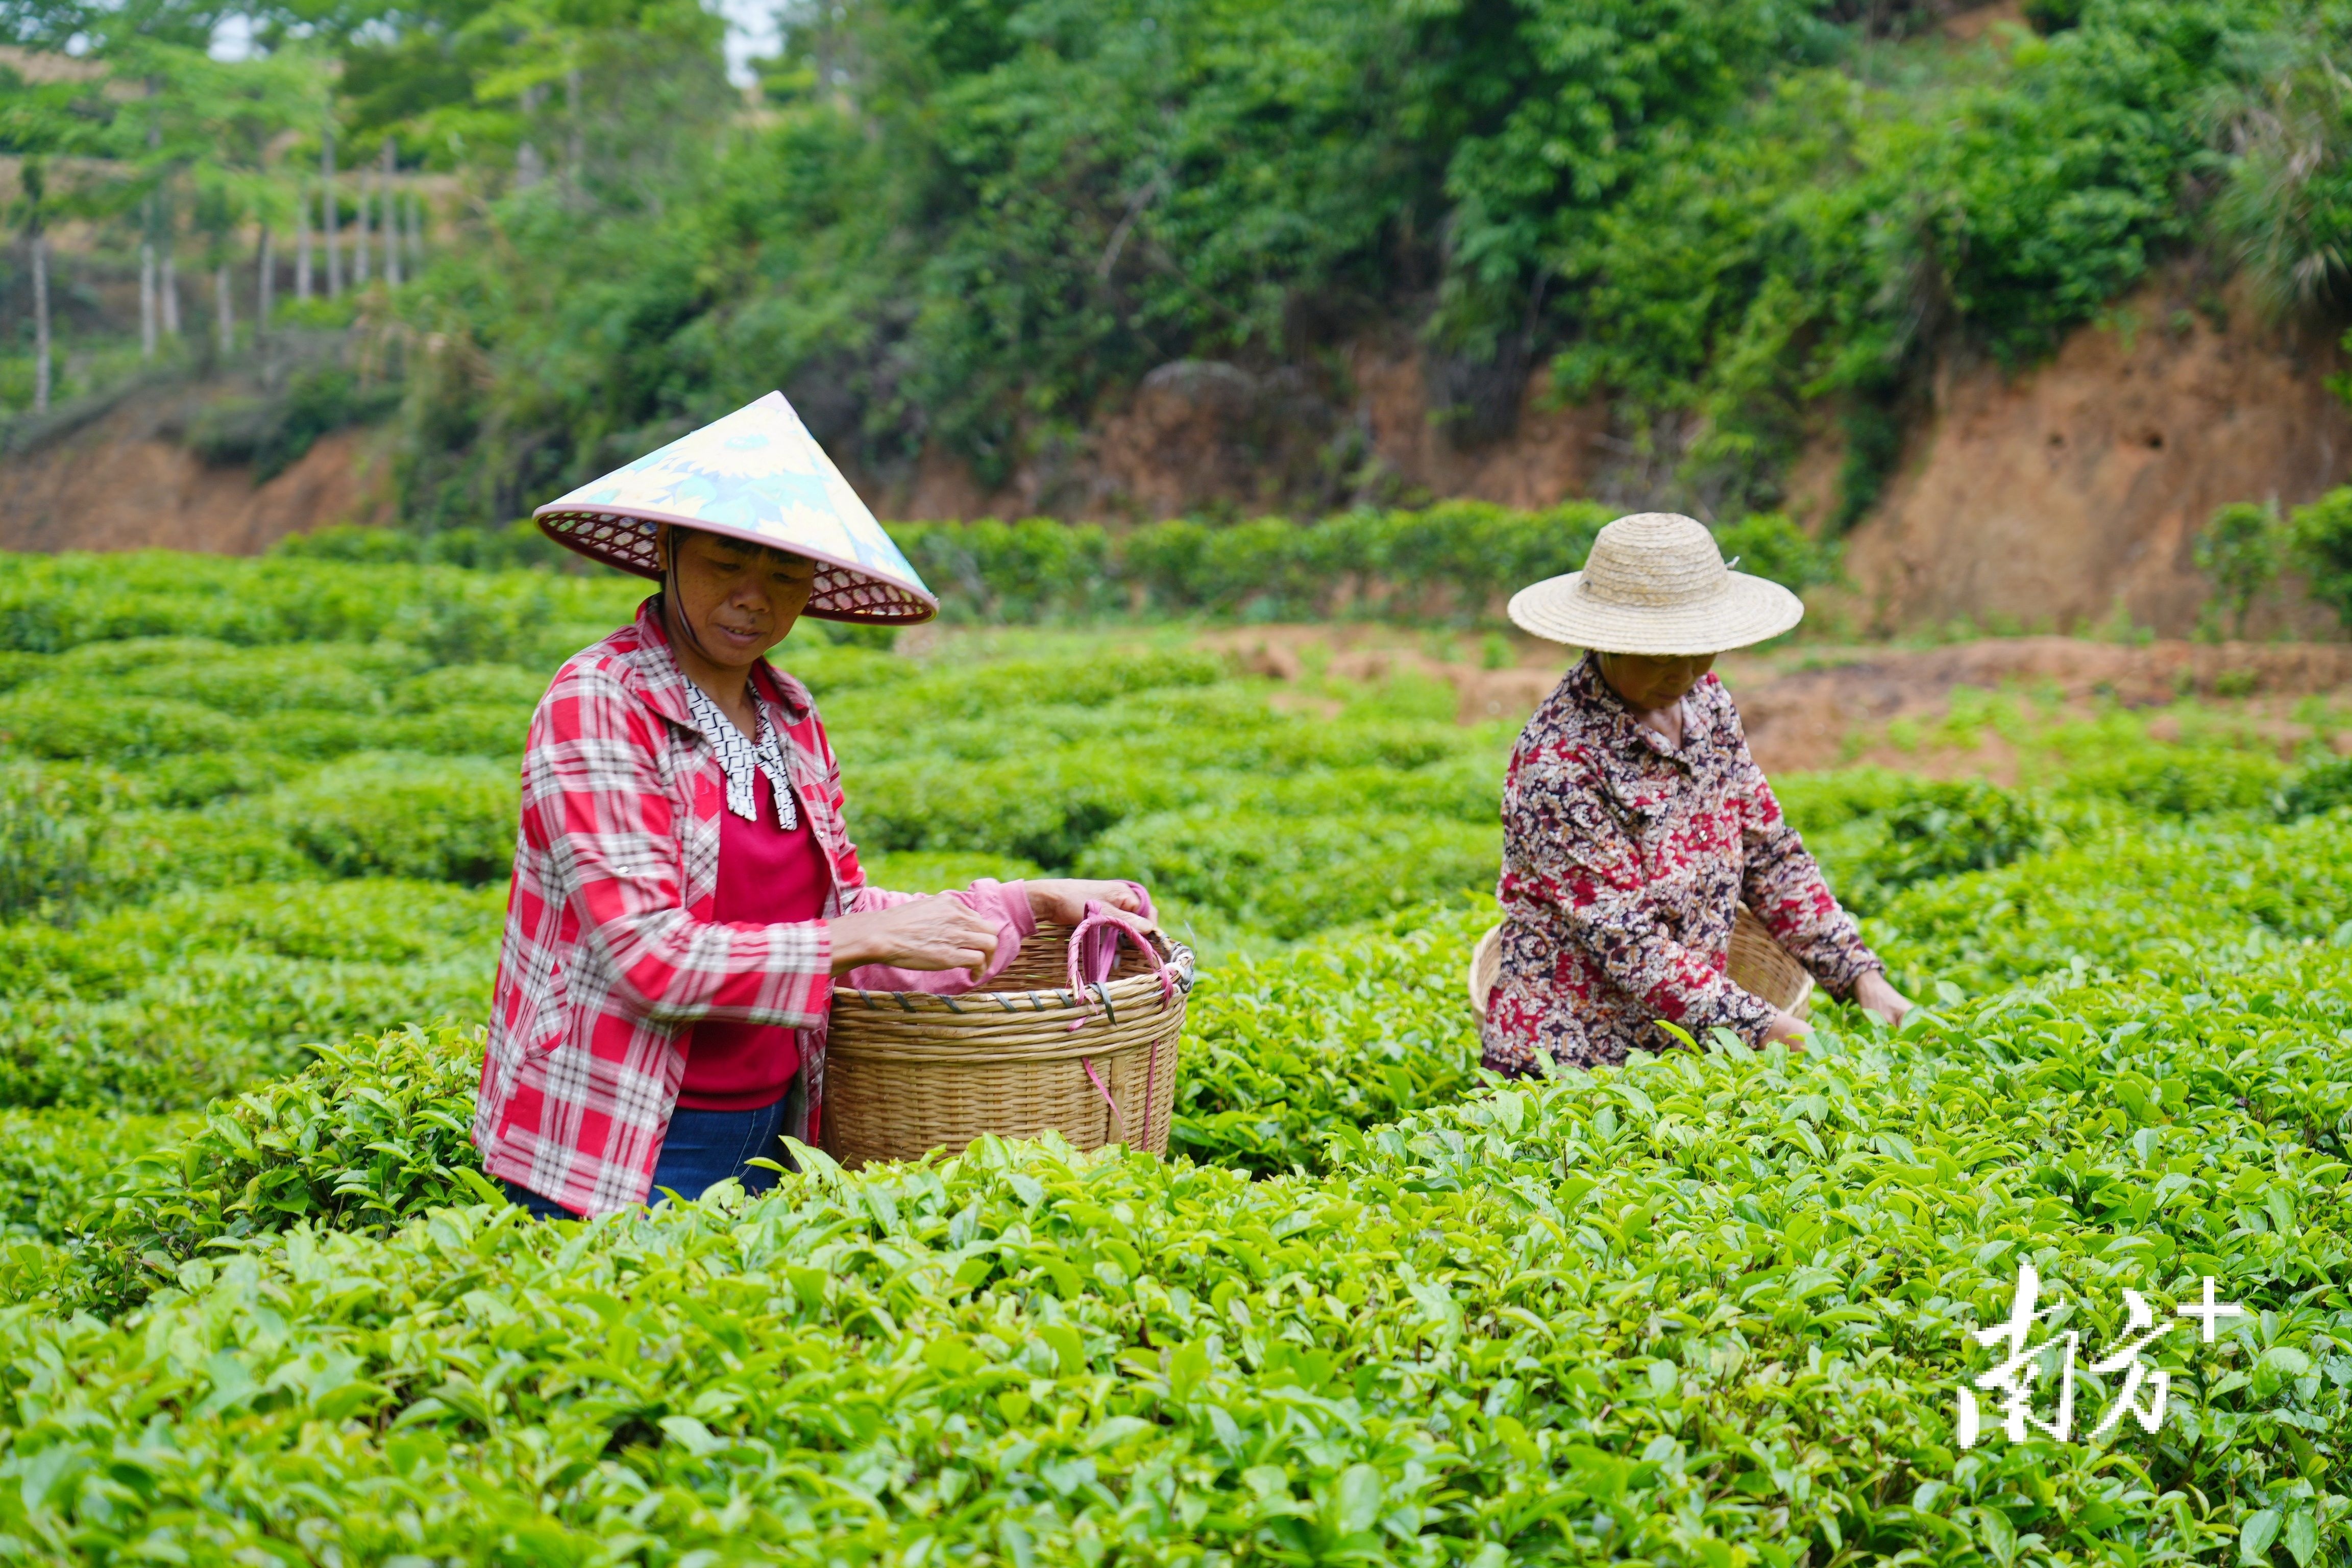 茶农在茶垄间穿行，熟练地采摘鲜嫩的茶芽。 